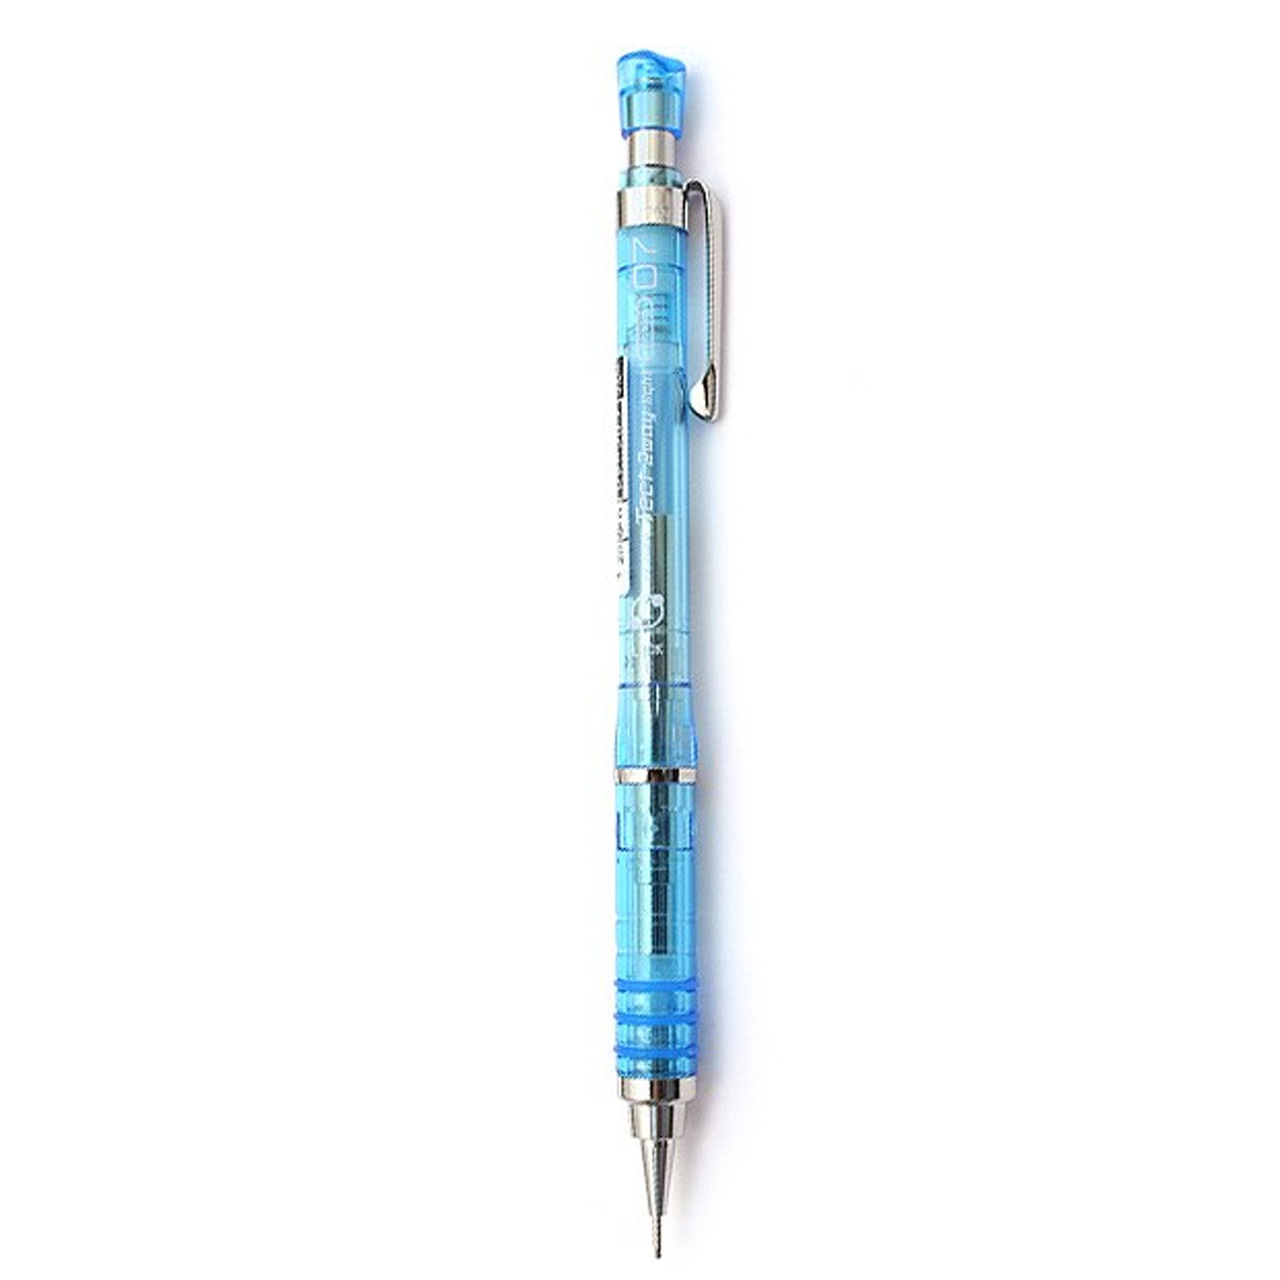 مداد نوکی زبرا مدل Tect 2Way با قطر نوشتاری 0.7 میلی متر